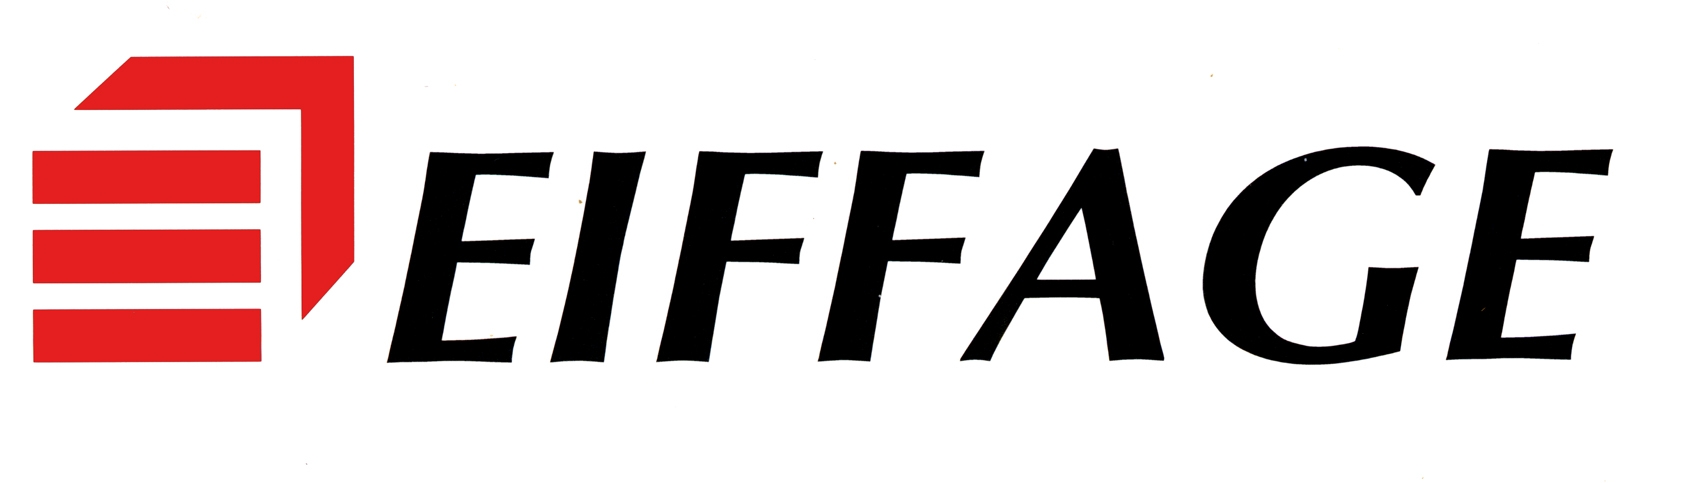 Logo eiffage h def